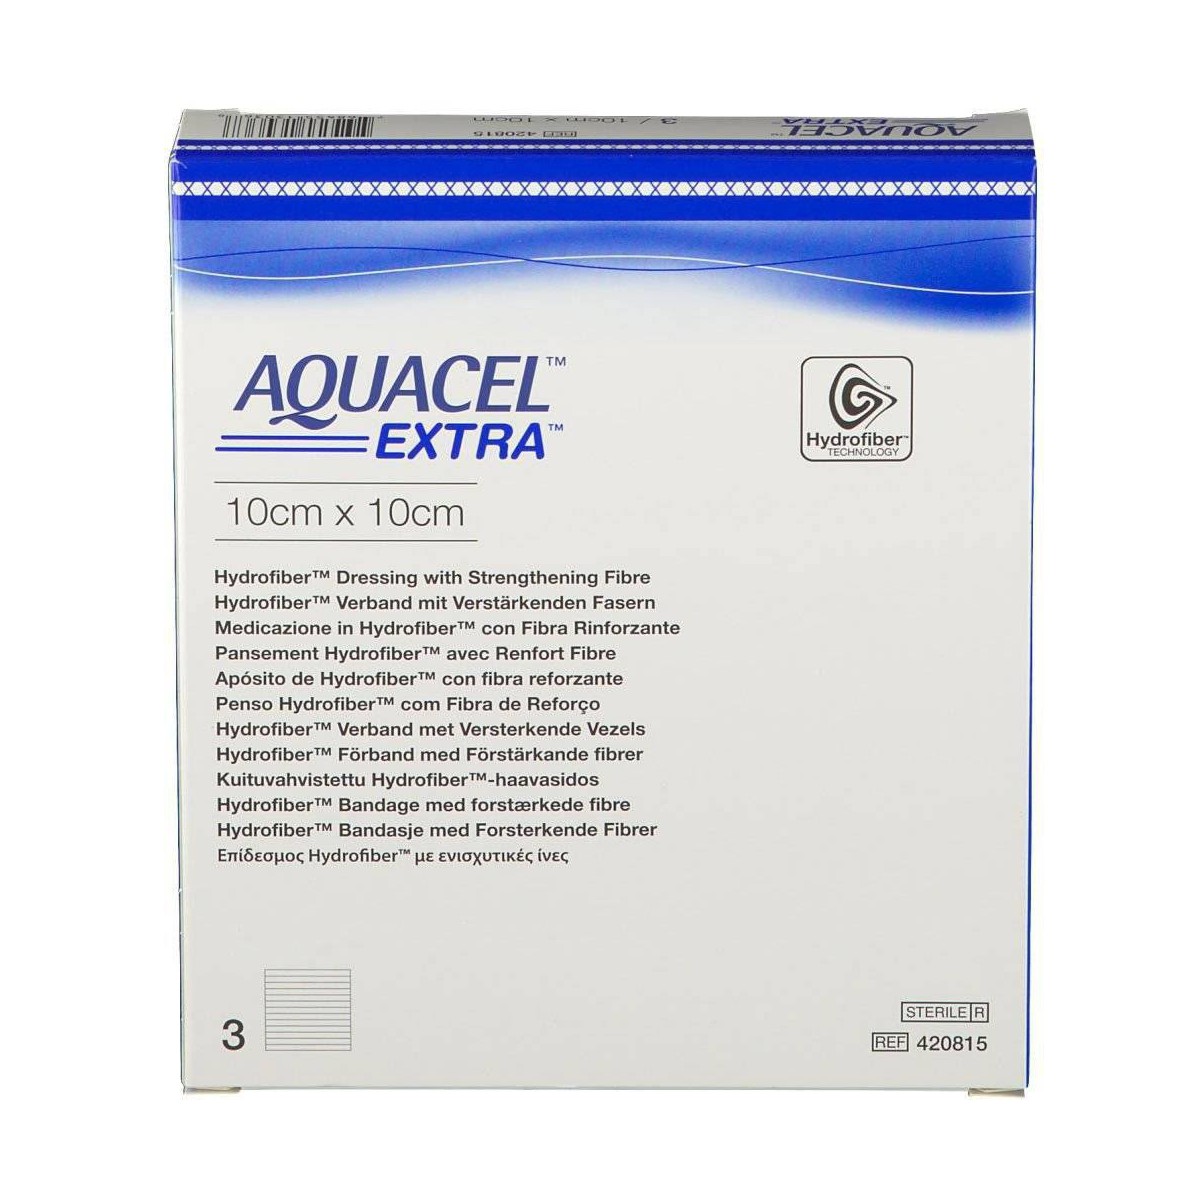 Aquacel 10x10 cm 3 Apositos